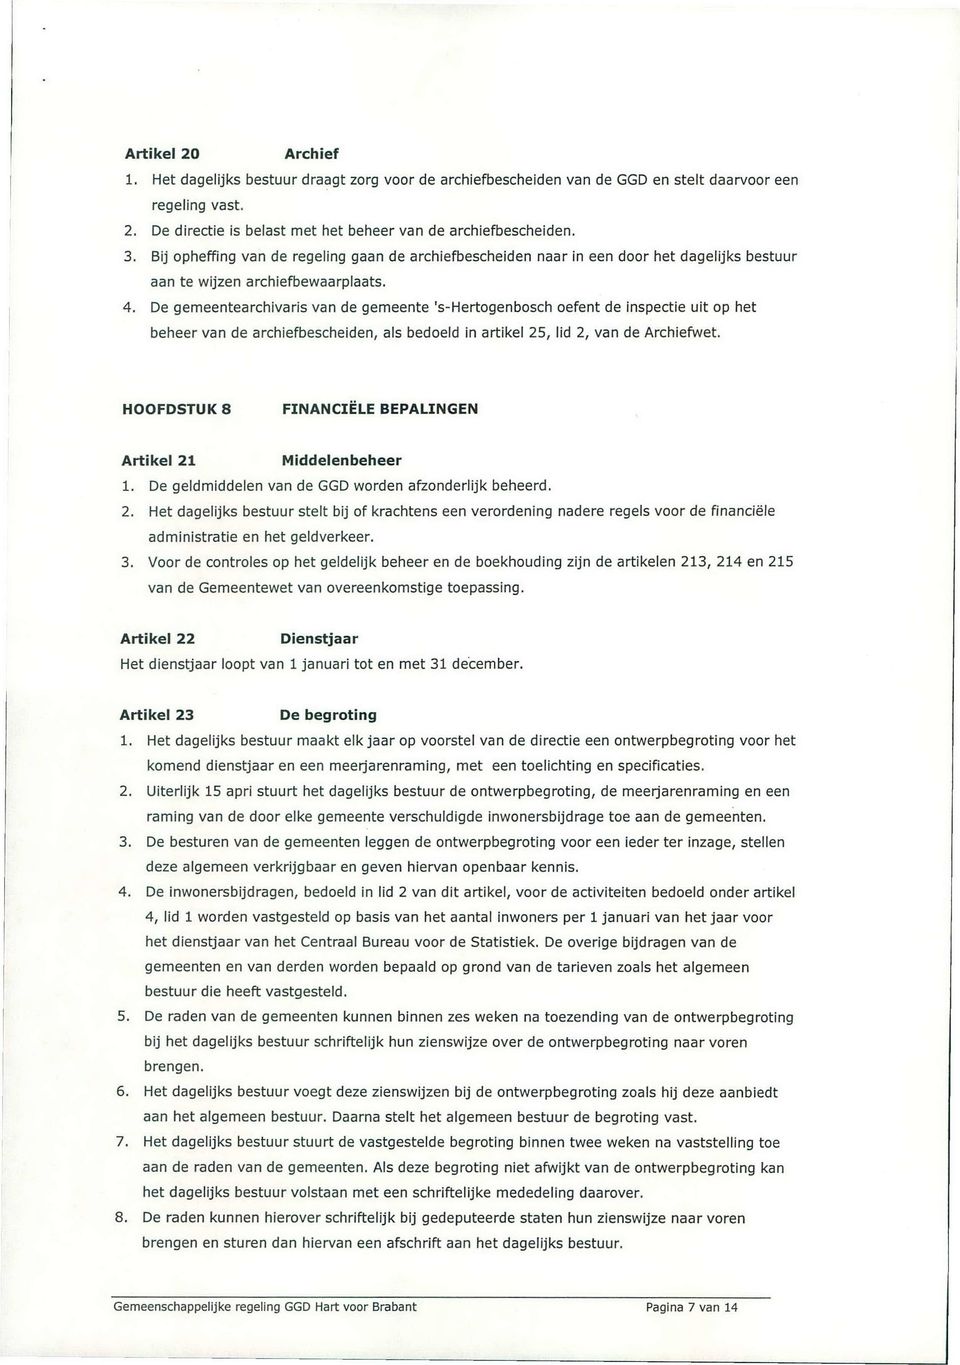 De gemeentearchivaris van de gemeente 's-hertogenbosch oefent de inspectie uit op het beheer van de archiefbescheiden, als bedoeld in artikel 25, lid 2, van de Archiefwet.